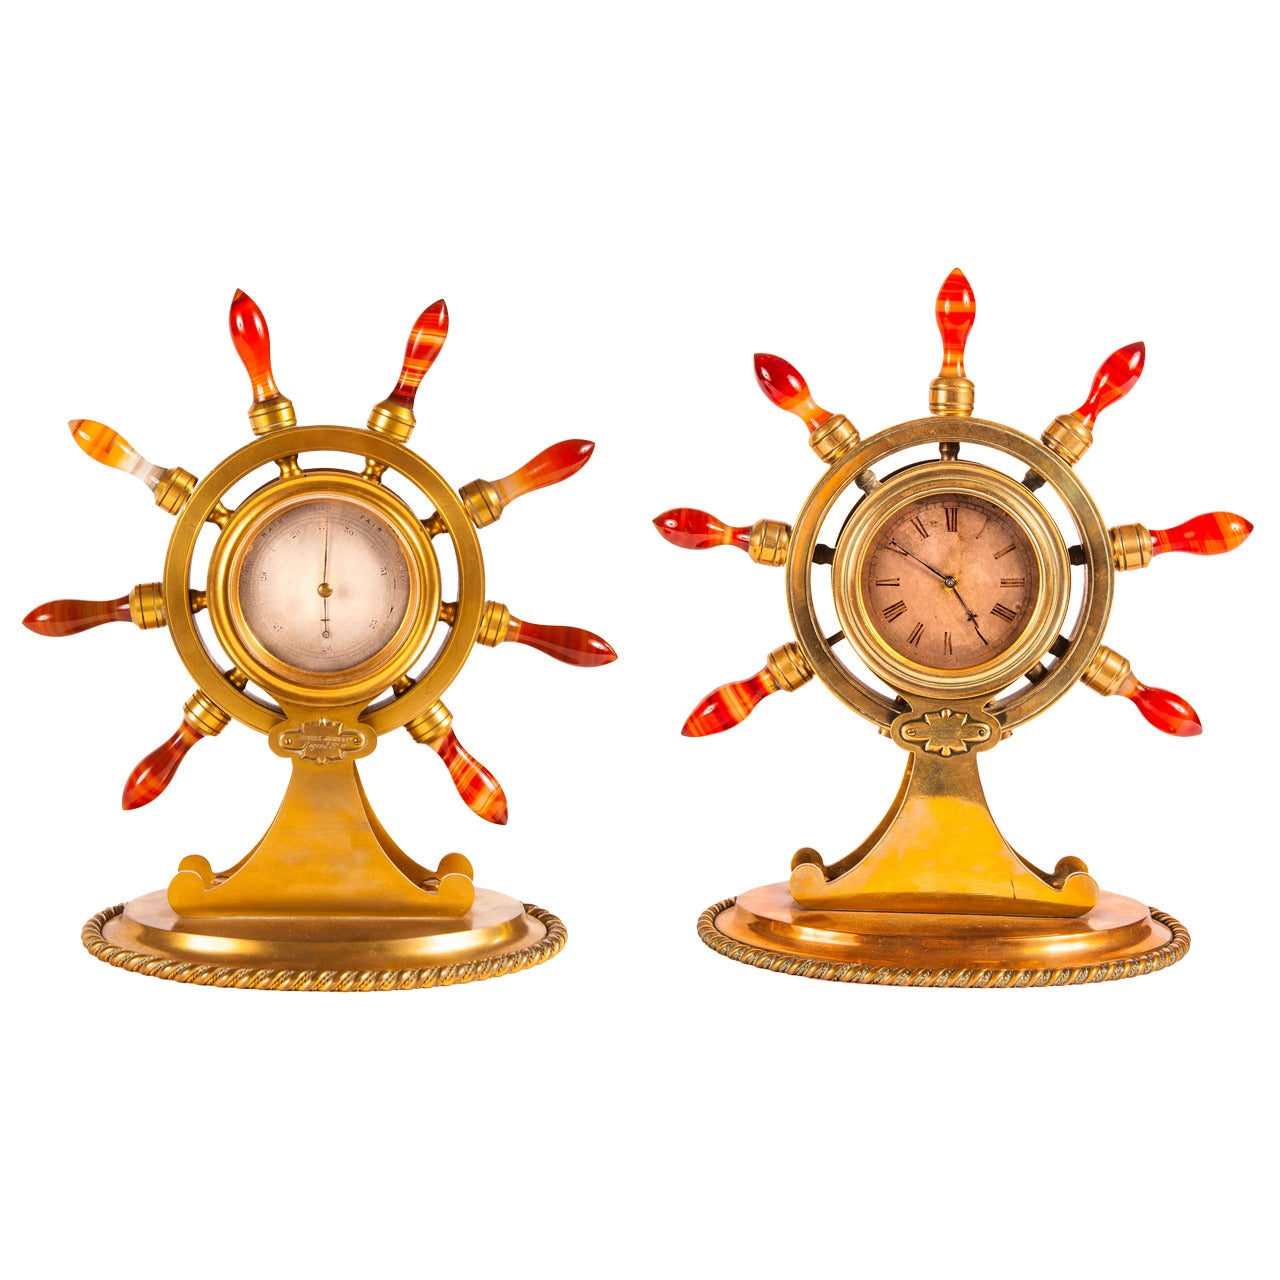 Viktorianische Goldbronze-Uhr und Barometer-Schreibtisch-Set, von maritimem oder nautischem Interesse